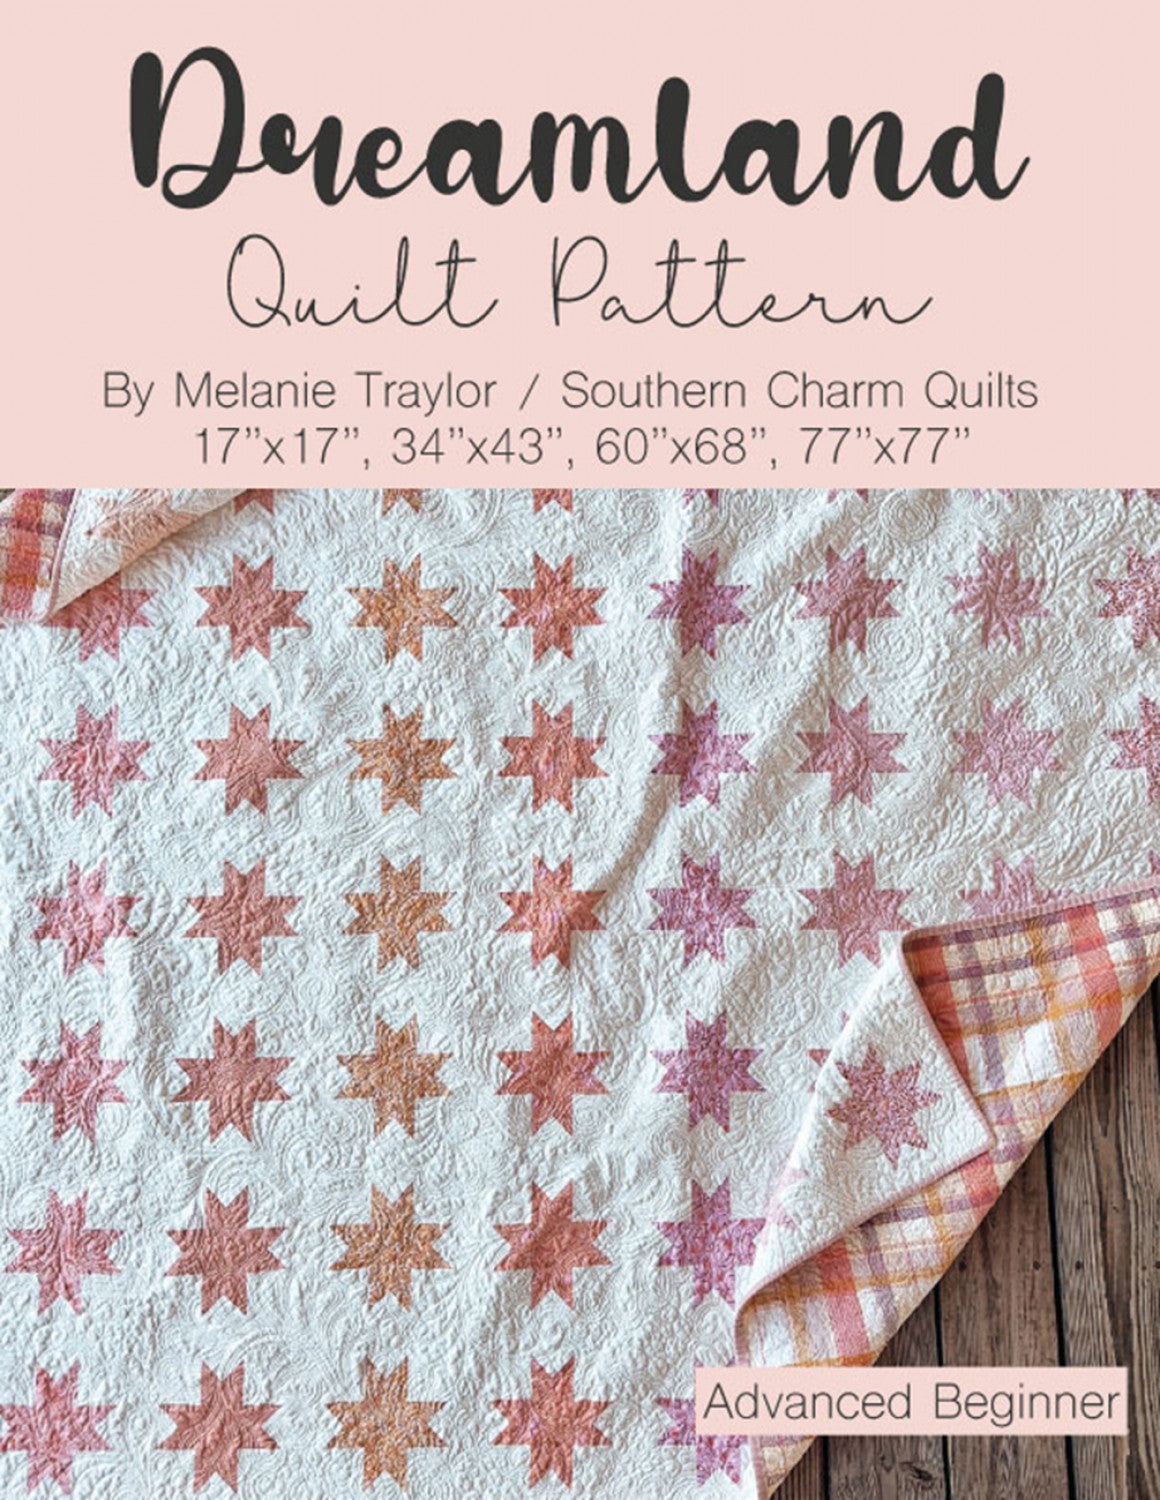 Dreamland Quilt Pattern